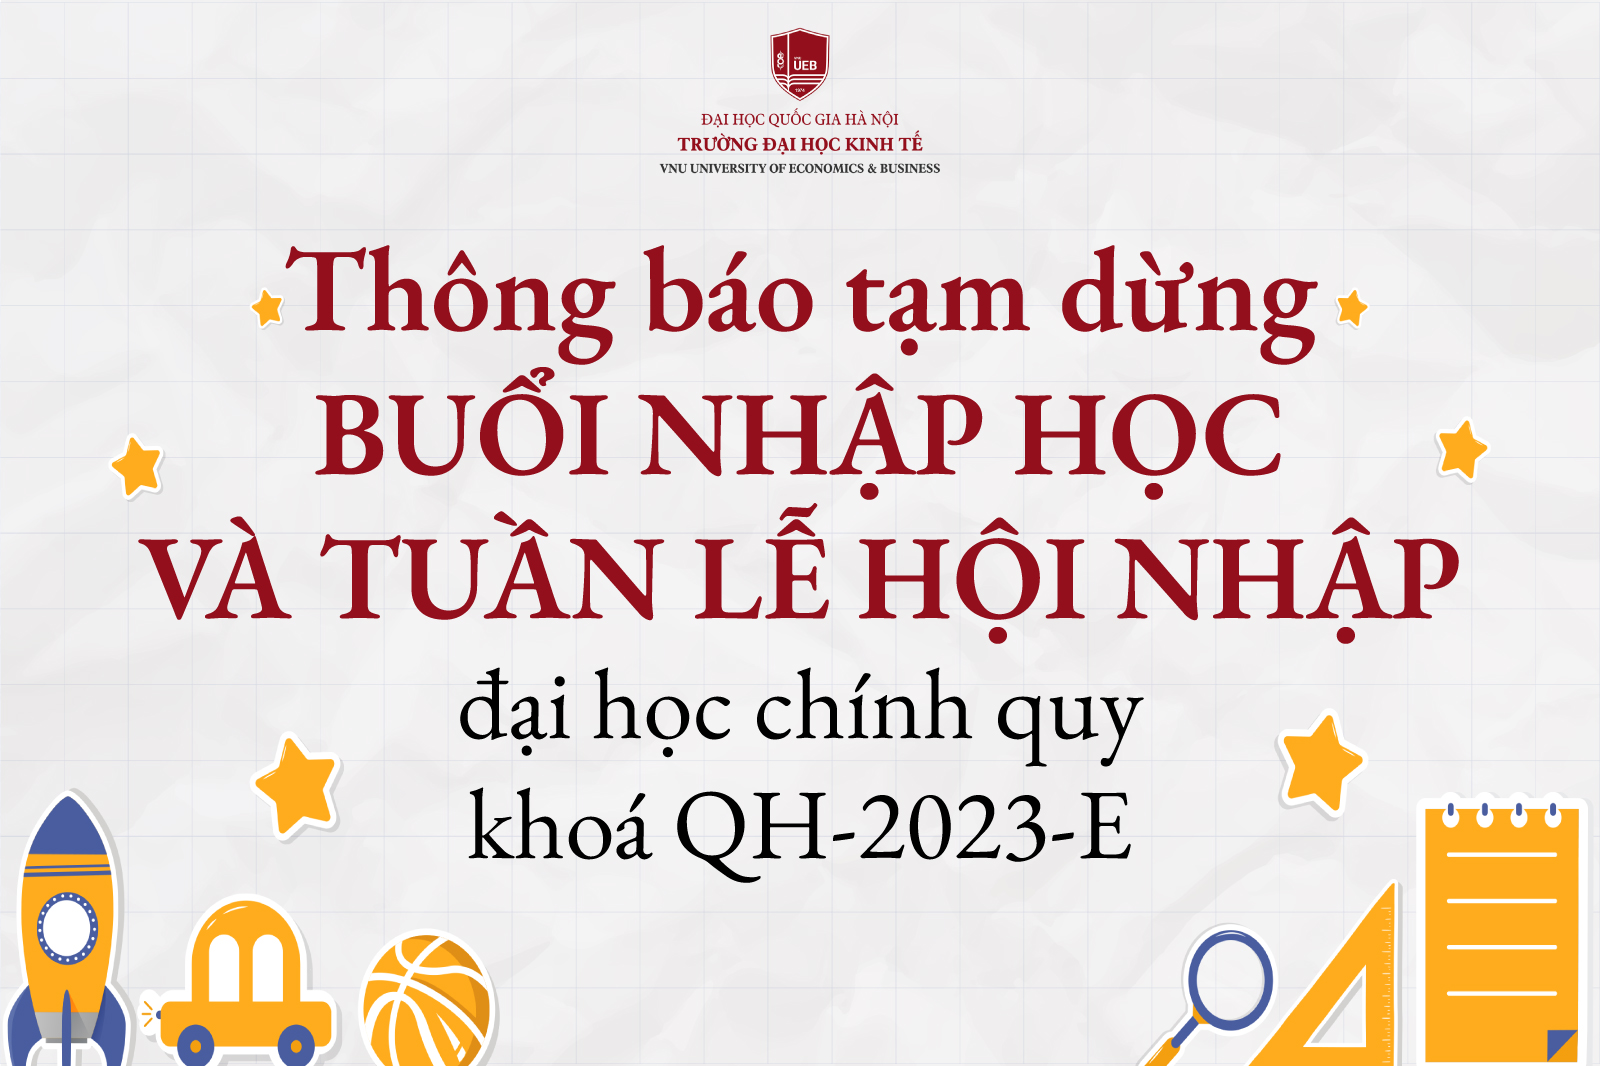 Thông báo tạm dừng buổi nhập học và Tuần hội nhập cho sinh viên QH-2023-E